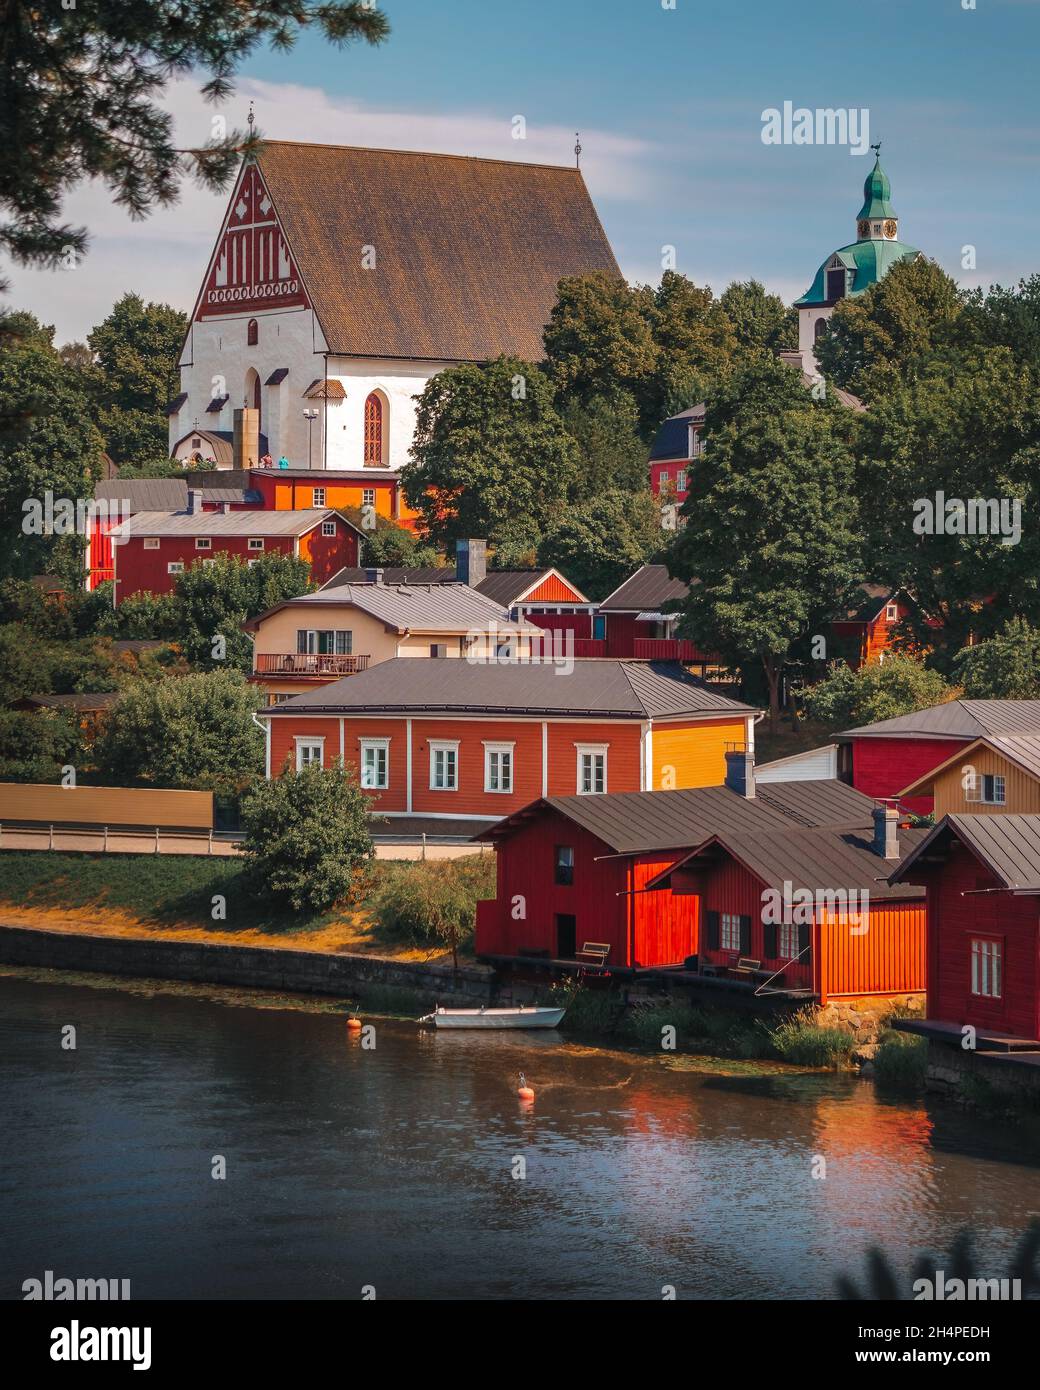 Altstadt von Porvoo in Finnland. Bunte Holzhäuser an einem Hang in der Nähe des Flusses. Steinkirche auf einem Hügel. Finnische Architektur. Skandinavien. Riverside. Stockfoto